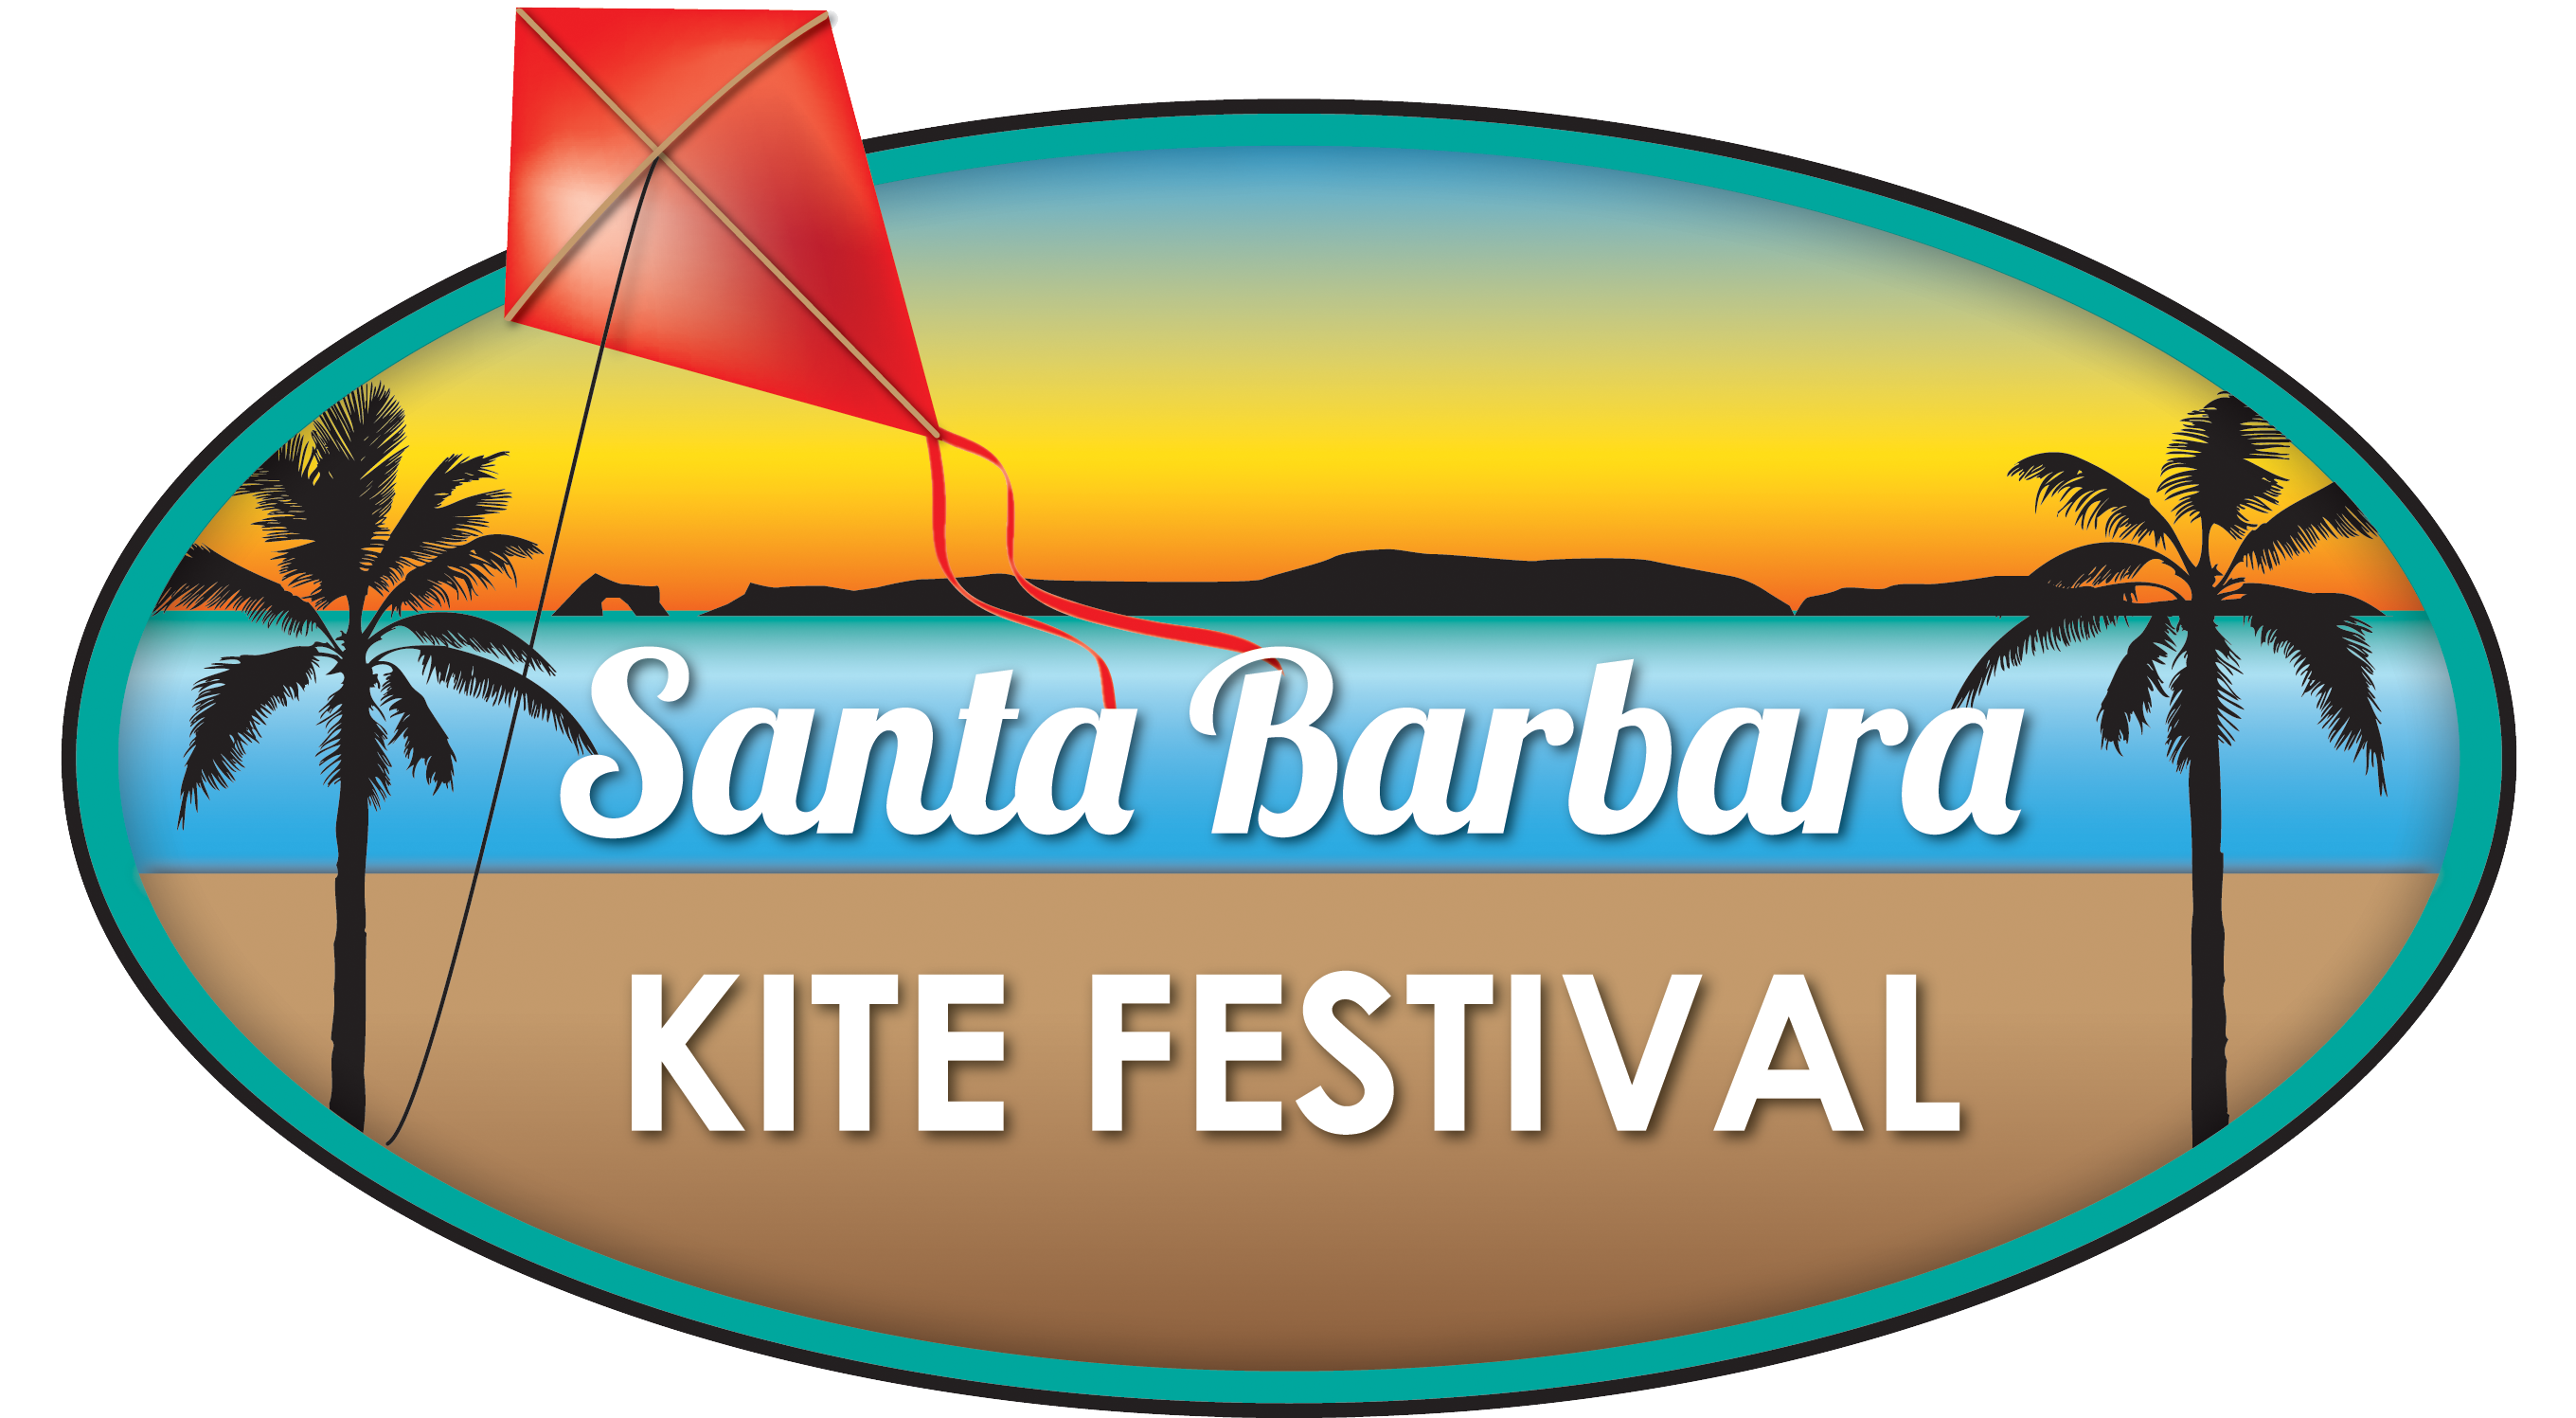 The Santa Barbara Kite Festival